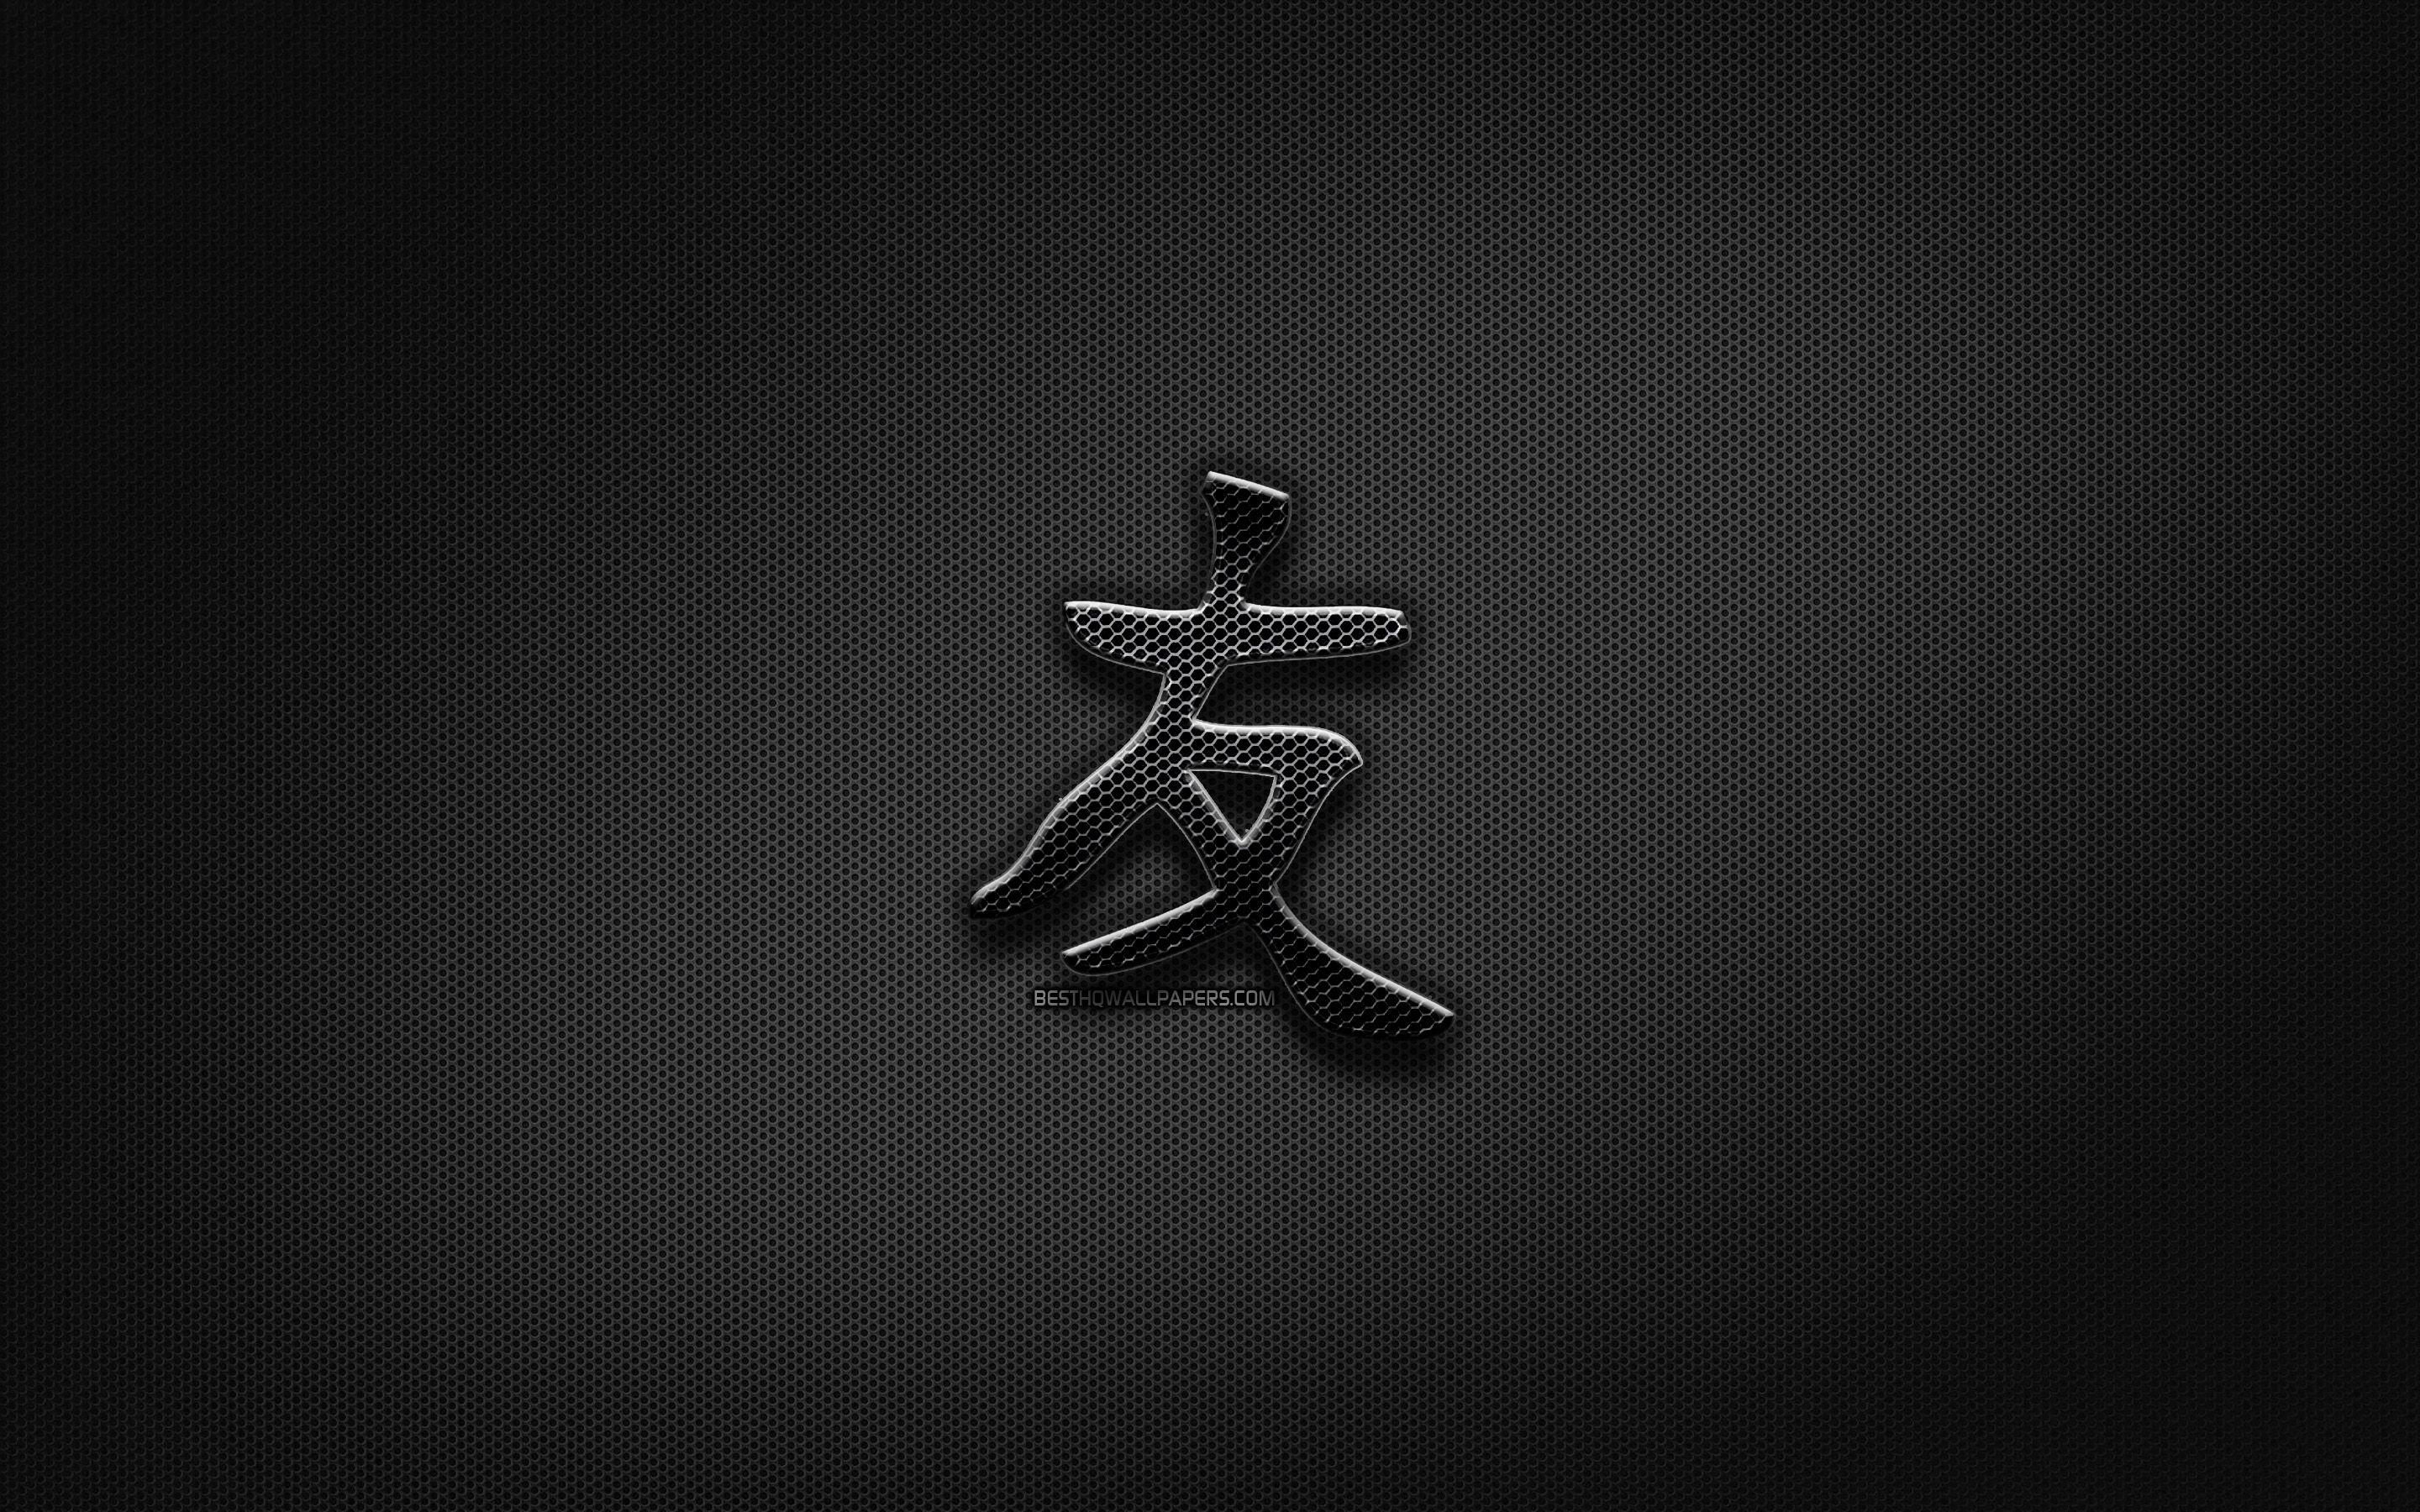 2880x1800 Tải hình nền Bạn bè Chữ tượng hình tiếng Nhật, chữ tượng hình kim loại, chữ Kanji, Biểu tượng tiếng Nhật cho bạn bè, dấu hiệu màu đen, Biểu tượng chữ Hán cho bạn bè, chữ tượng hình tiếng Nhật, nền kim loại, Chữ tượng hình tiếng Nhật cho máy tính để bàn với độ phân giải 2880x1800.  Cao